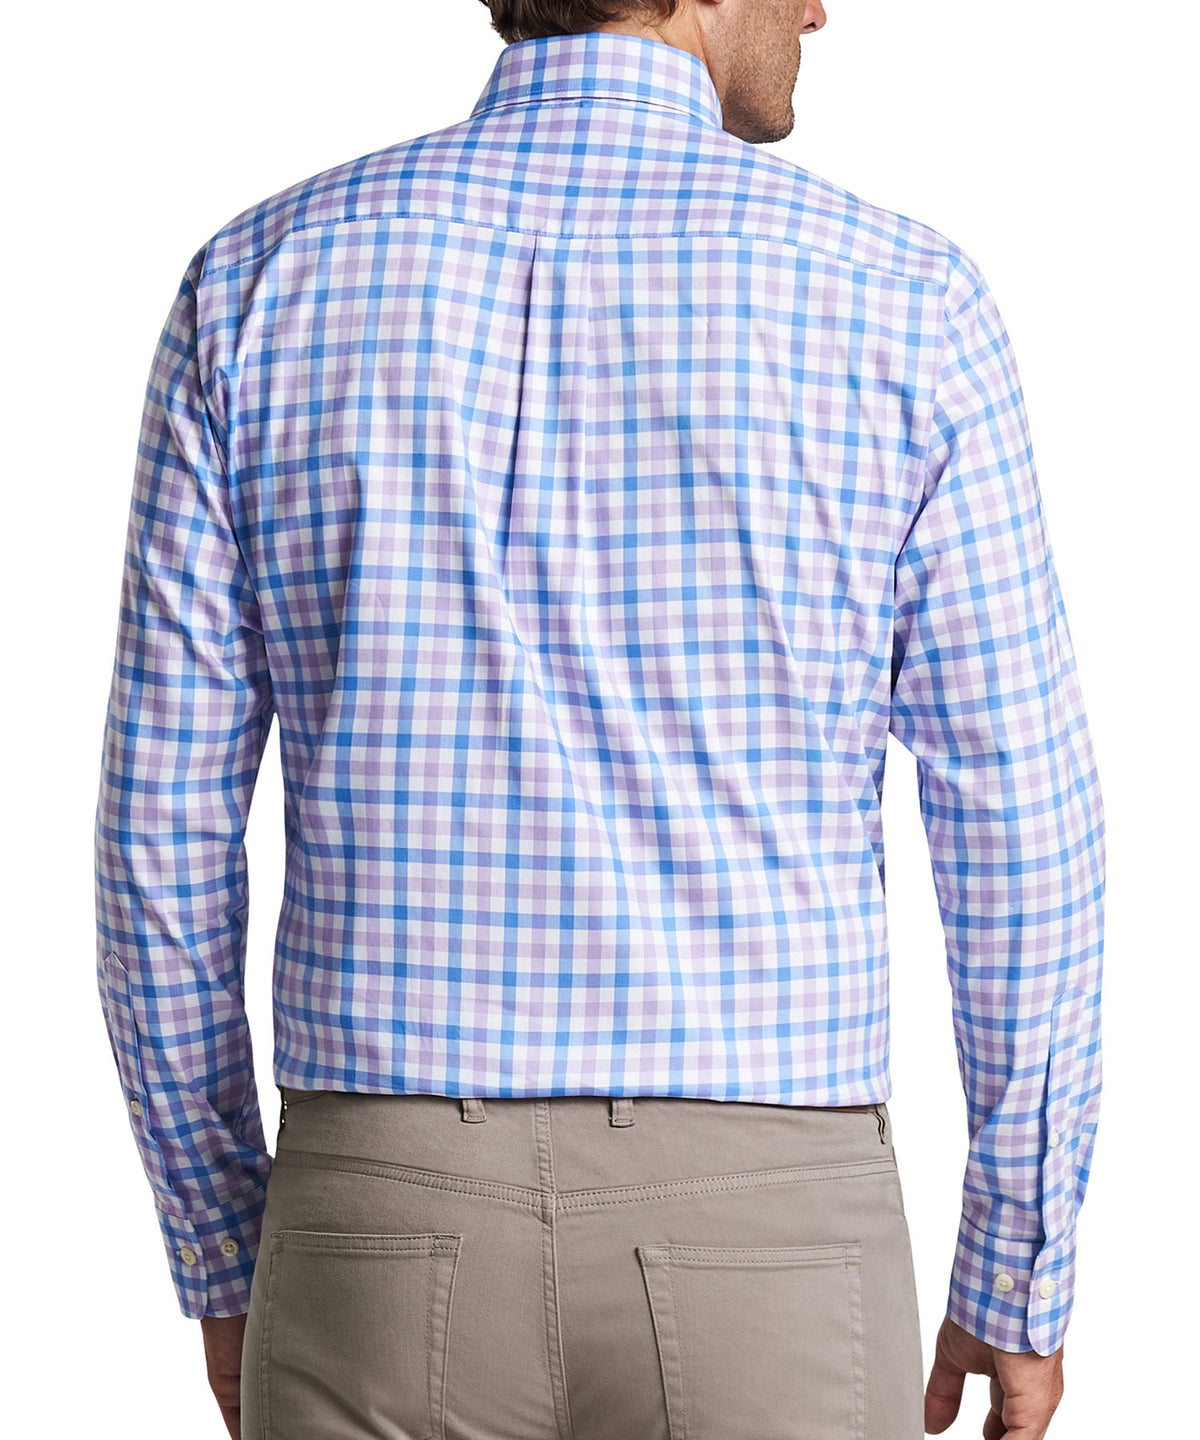 Peter Millar Long Sleeve Castine Button-Down Collar Patterned Sport Shirt, Men's Big & Tall